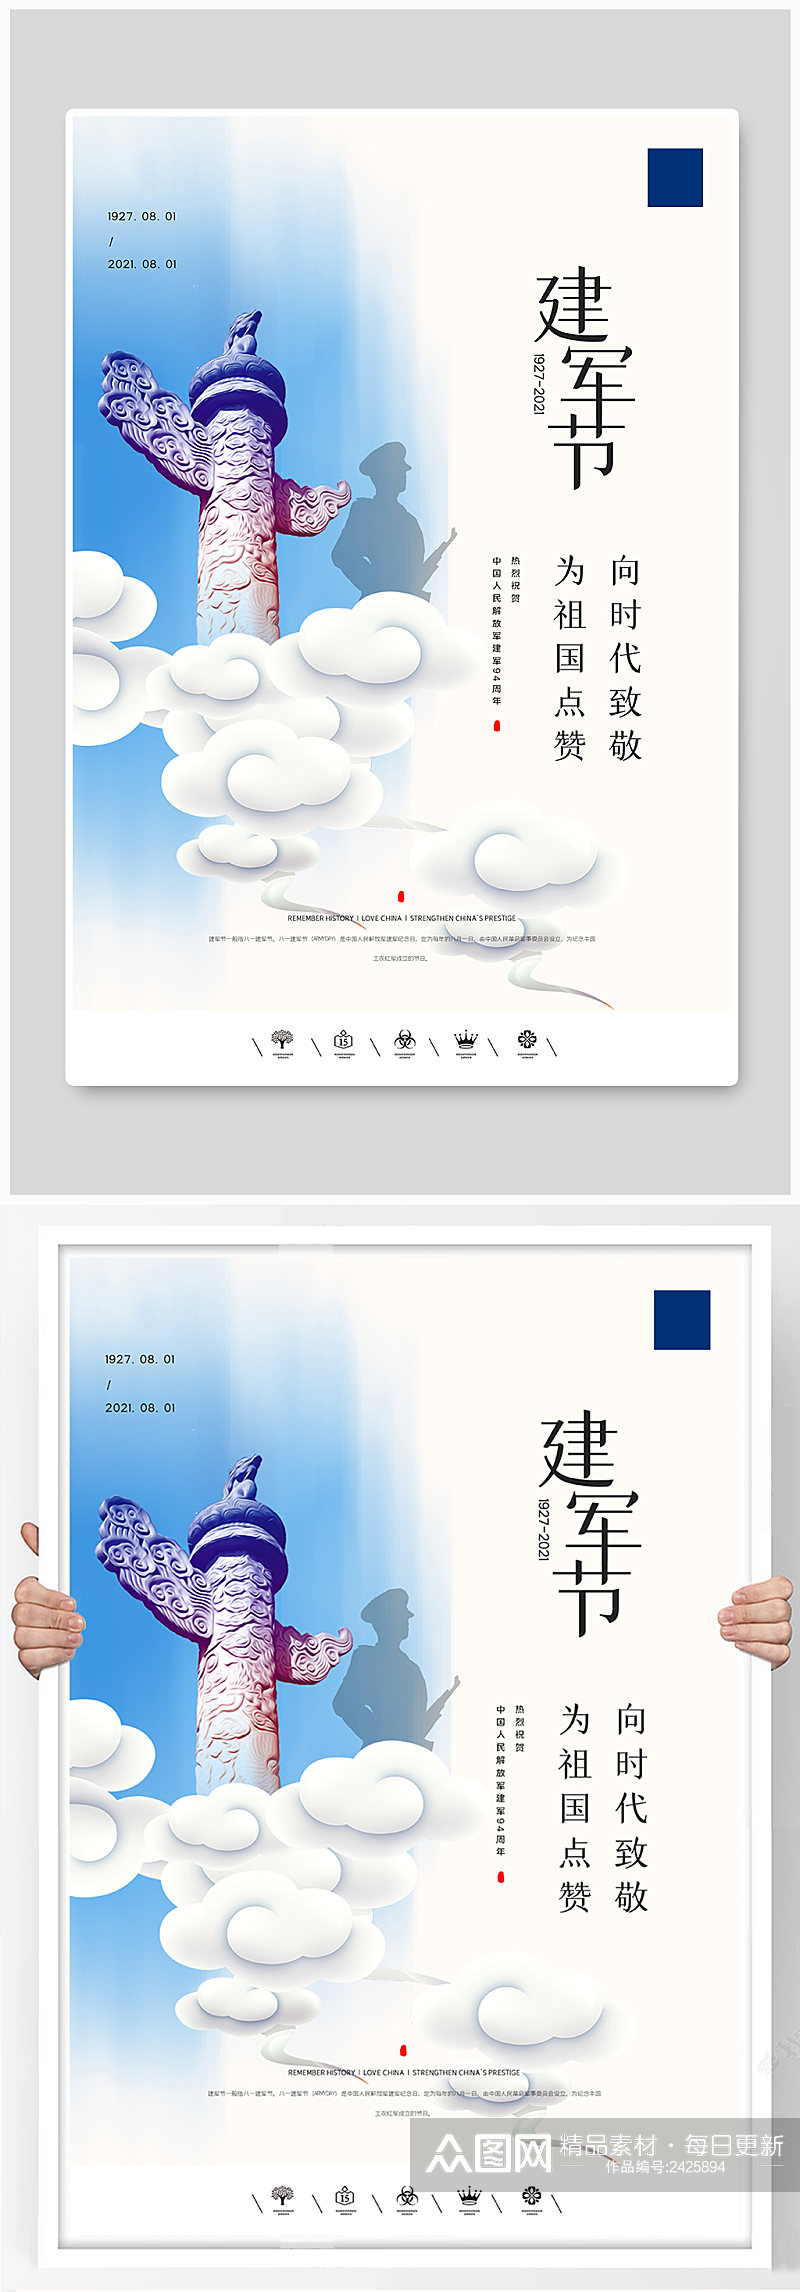 创意中国风中国人民解放军建军节户外海报素材